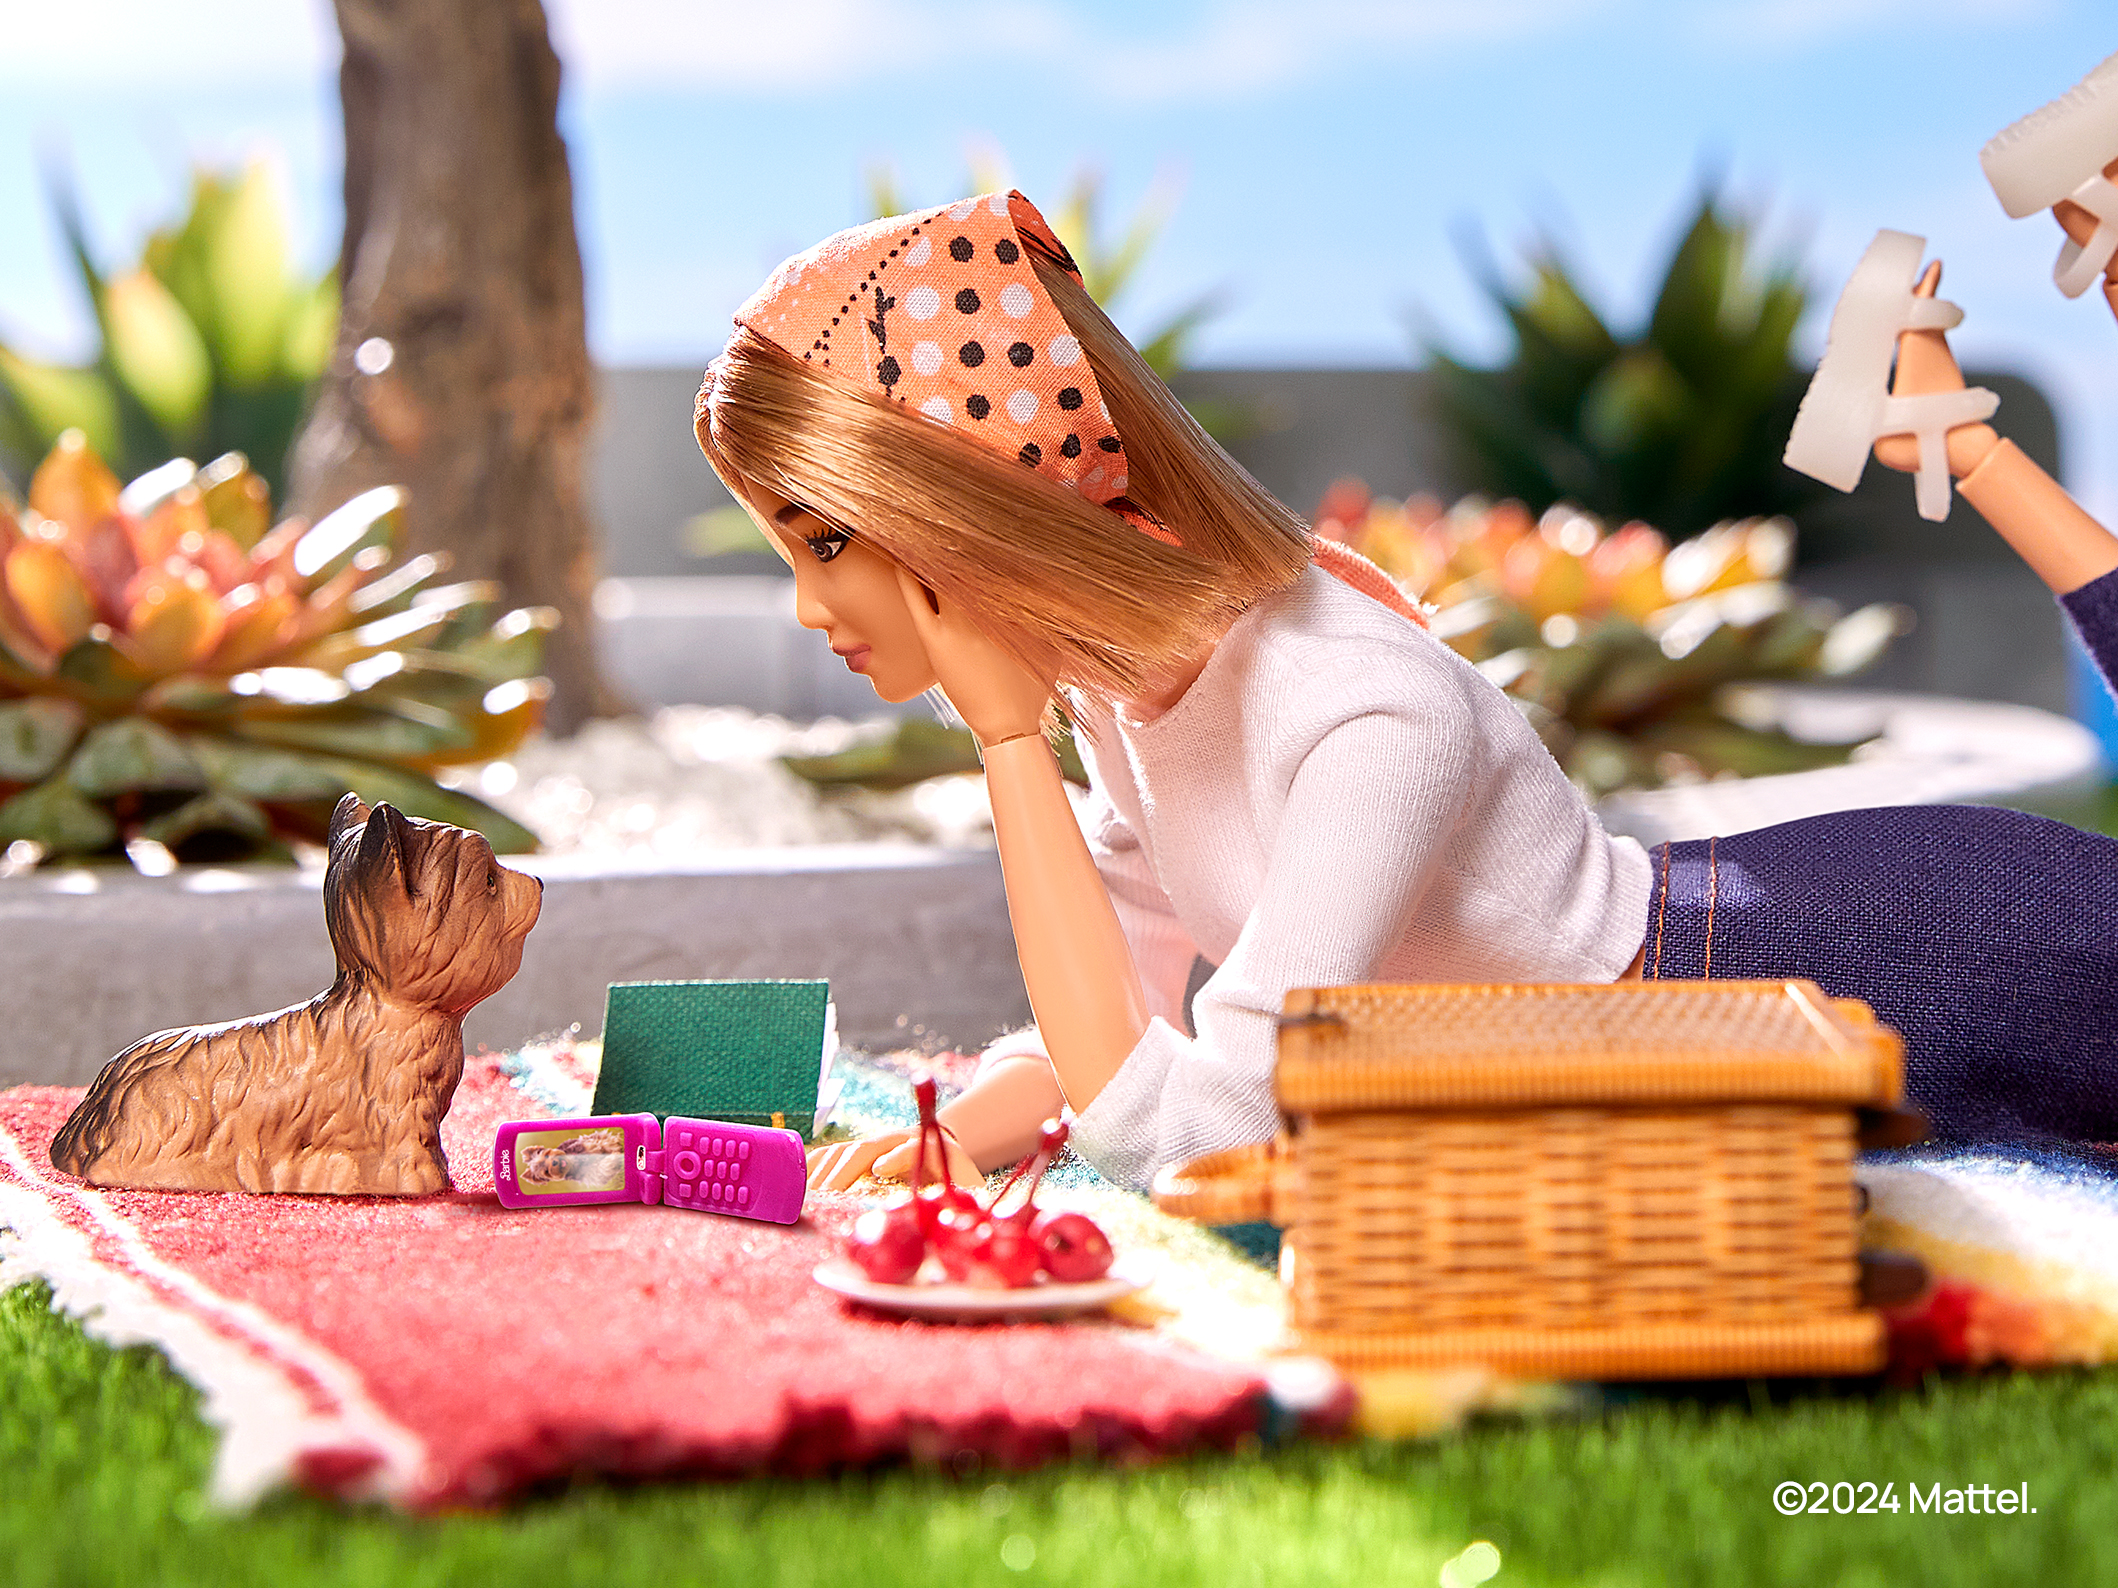 HMD prépare un "clamshell" à la Barbie et un smartphone modulaire réparable à domicile